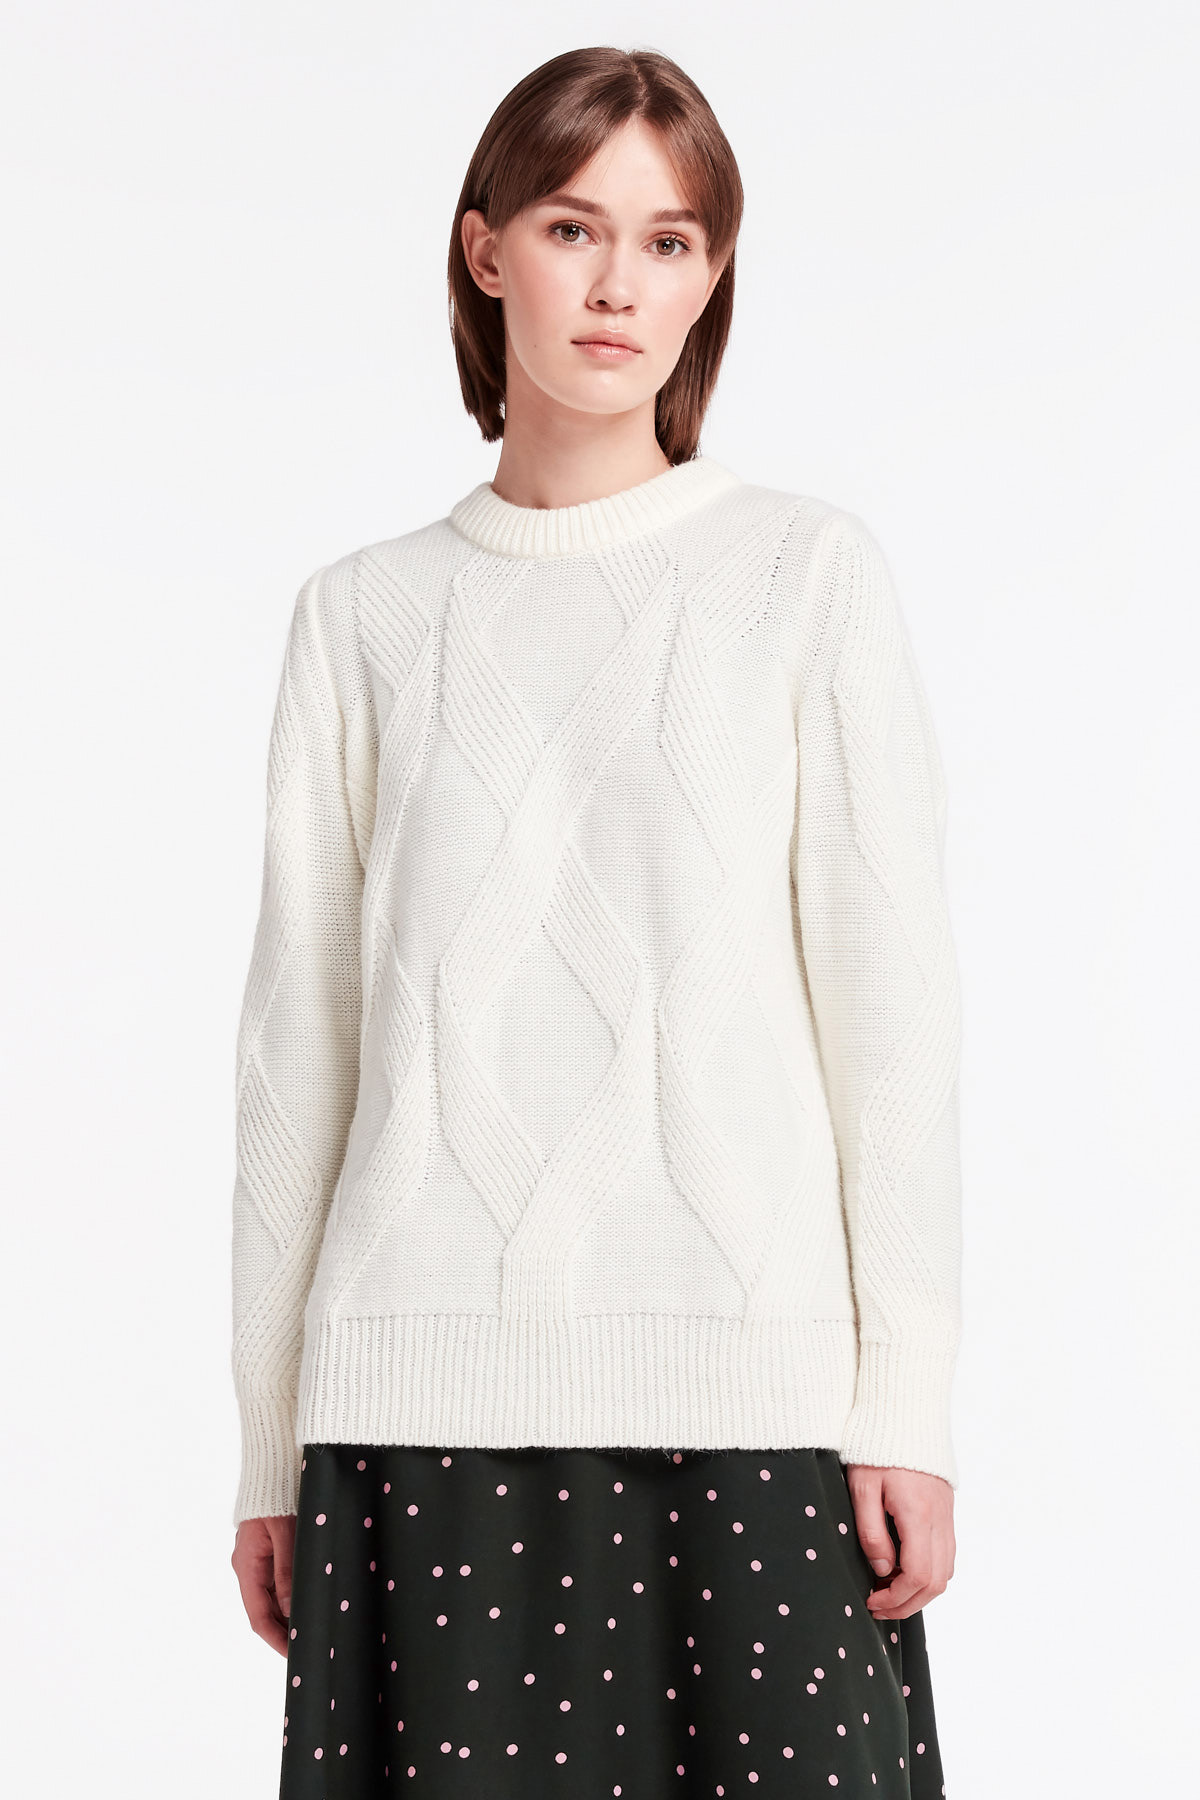 White free knit sweater, photo 1